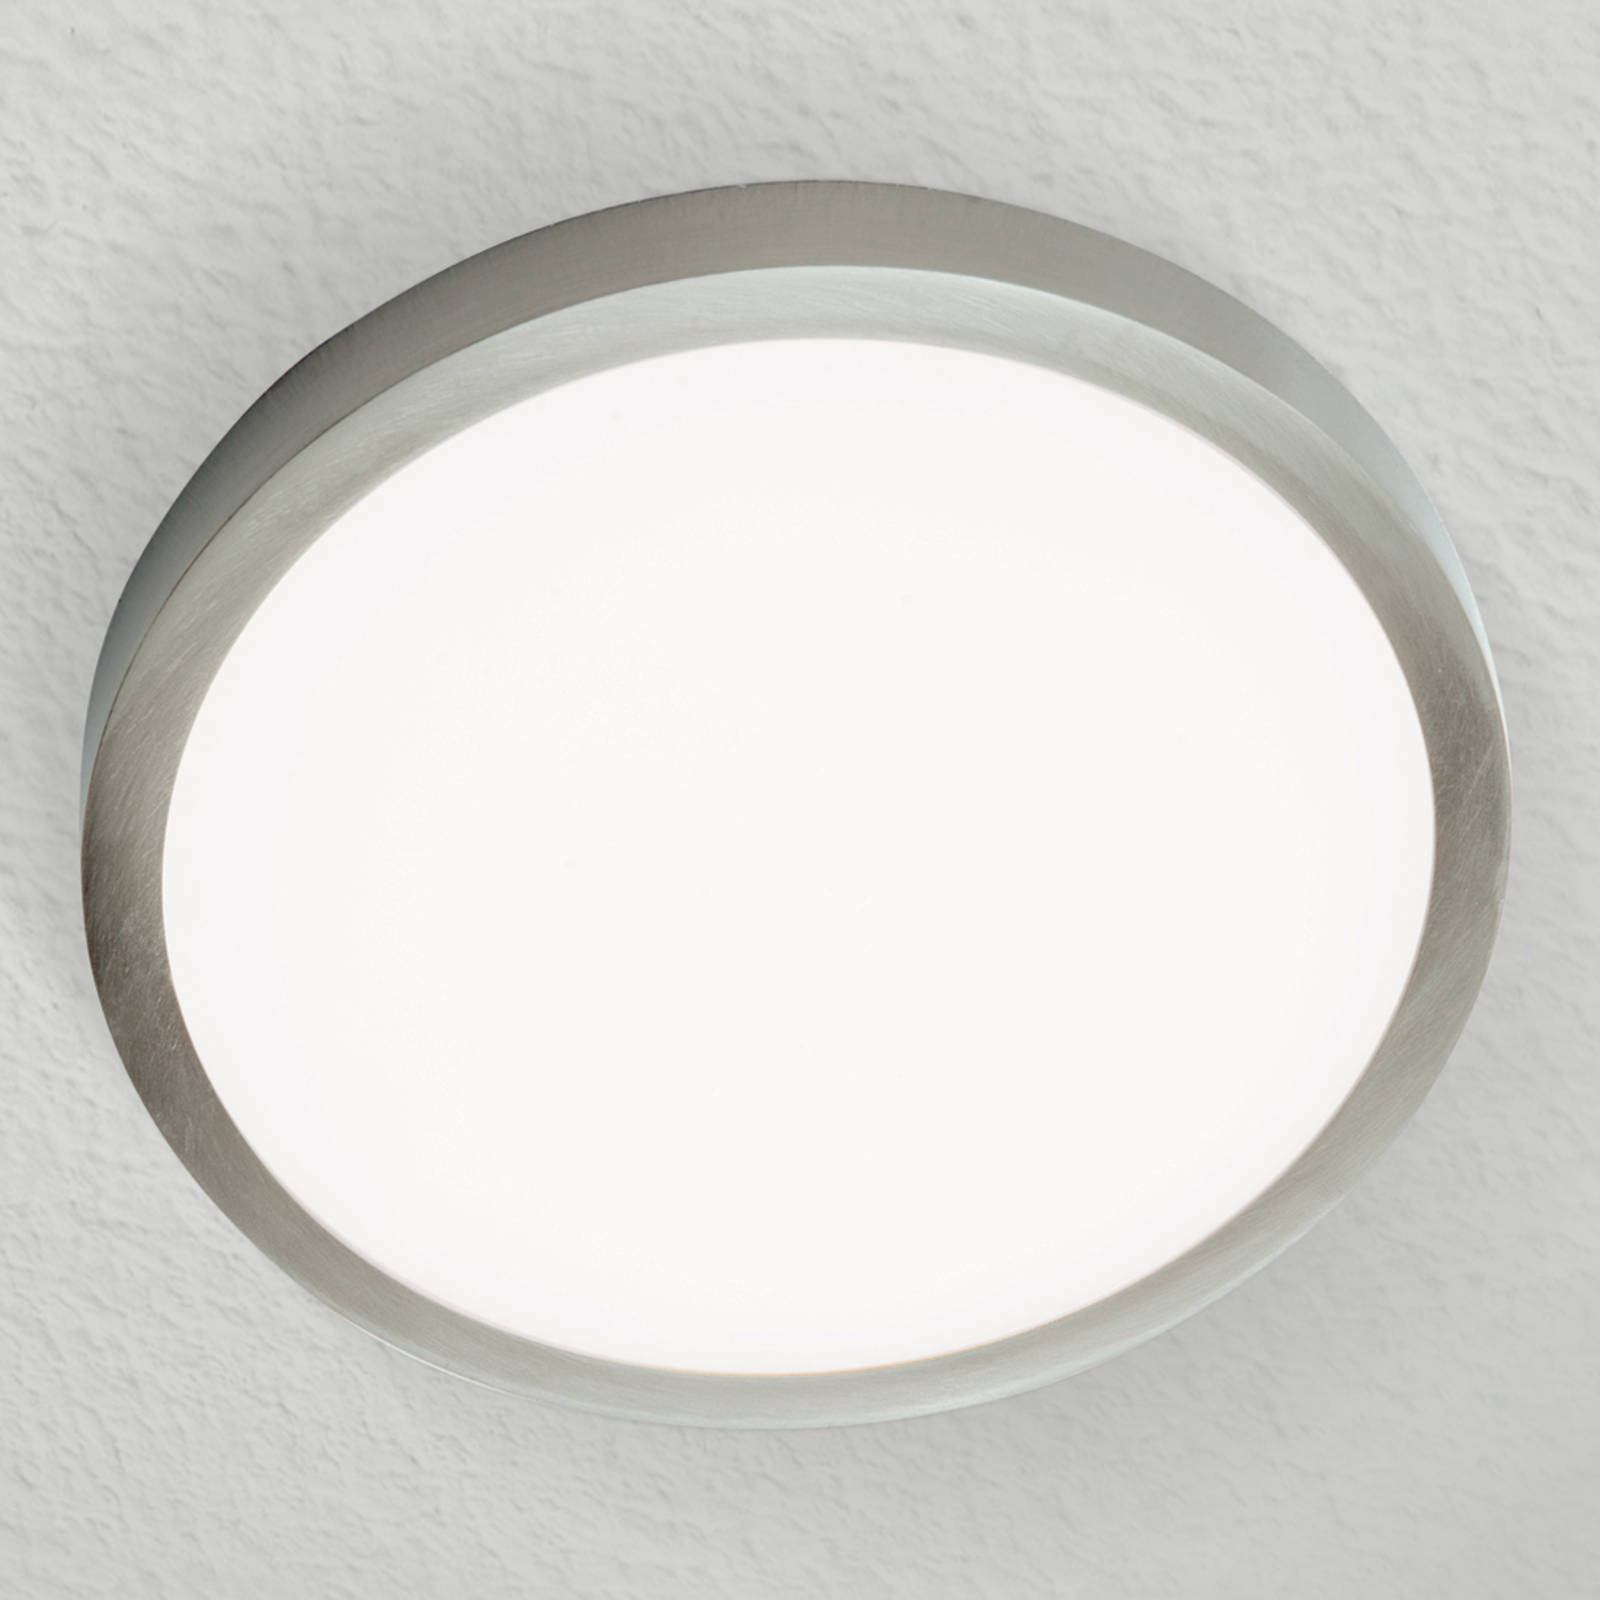 Stropné LED svietidlo Vika okrúhla, titán, Ø 23cm